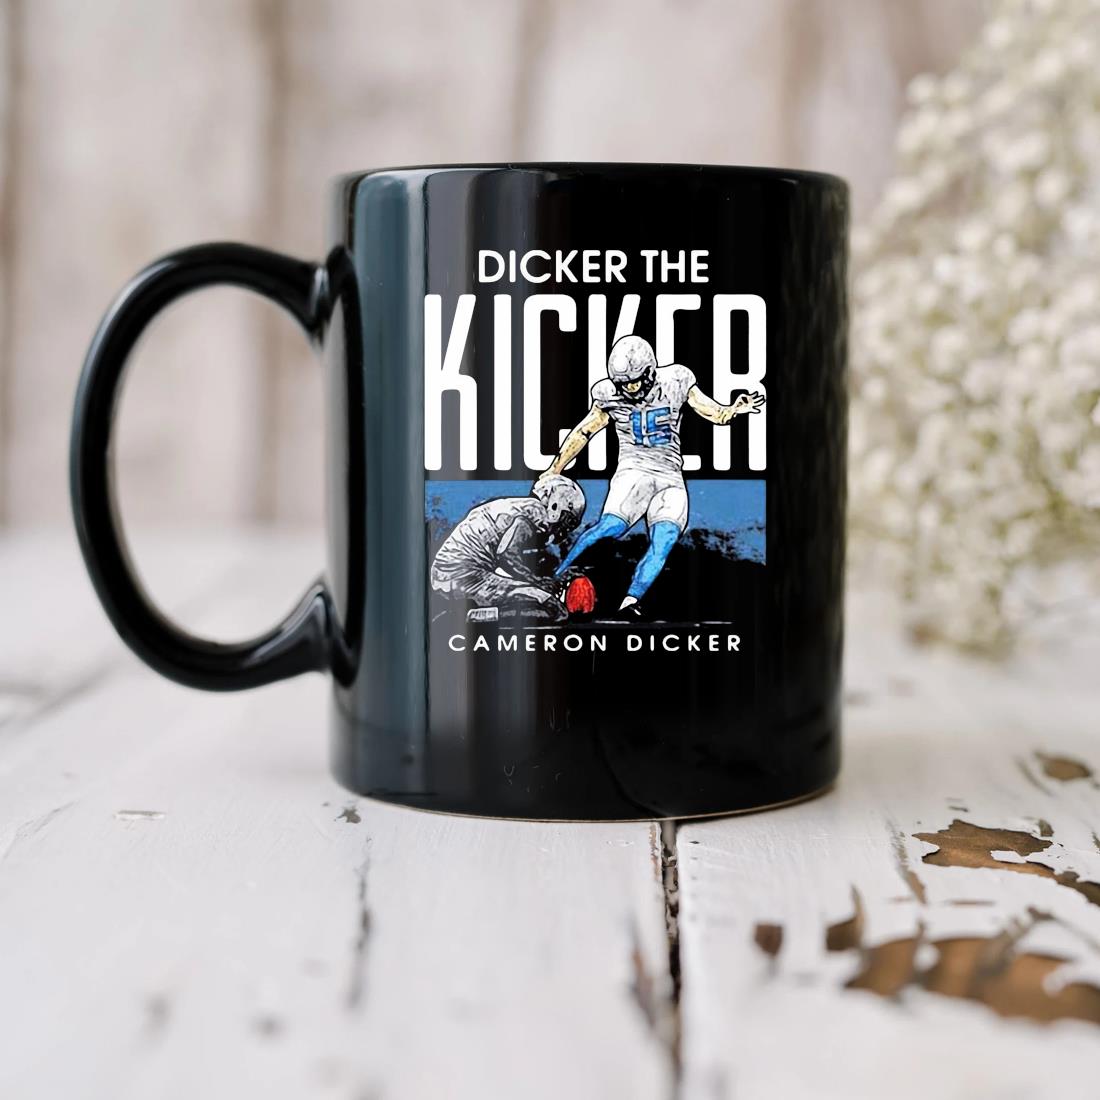 Dicker The Kicker Cameron Dicker Mug biu